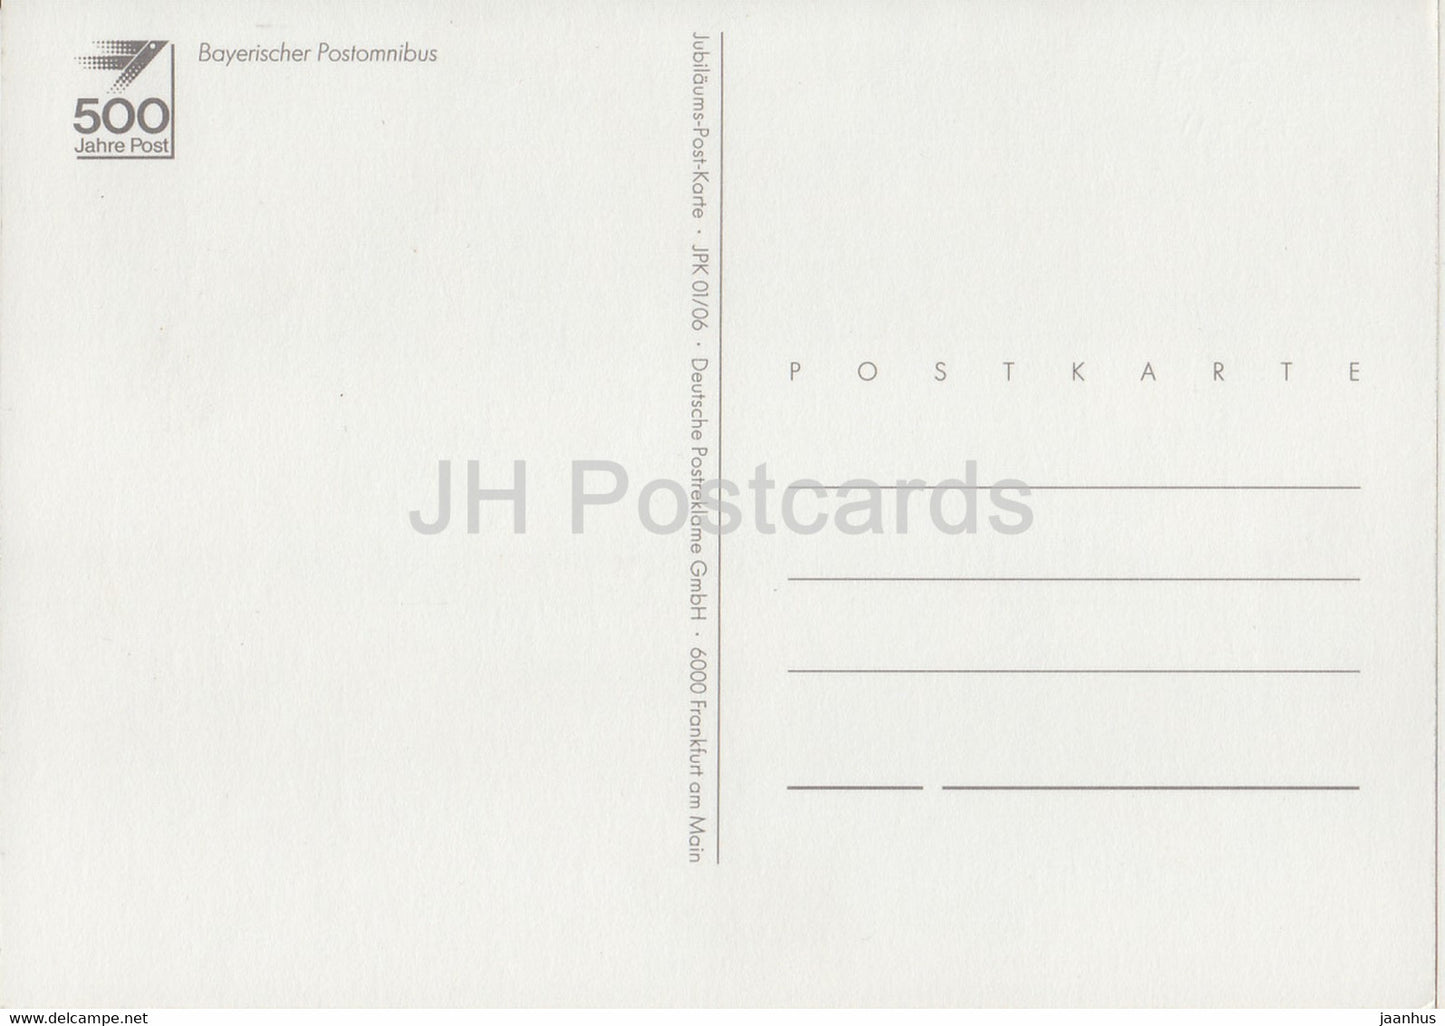 Bayerischer Postomnibus - Postauto - Pferd - Illustration - Deutschland - unbenutzt